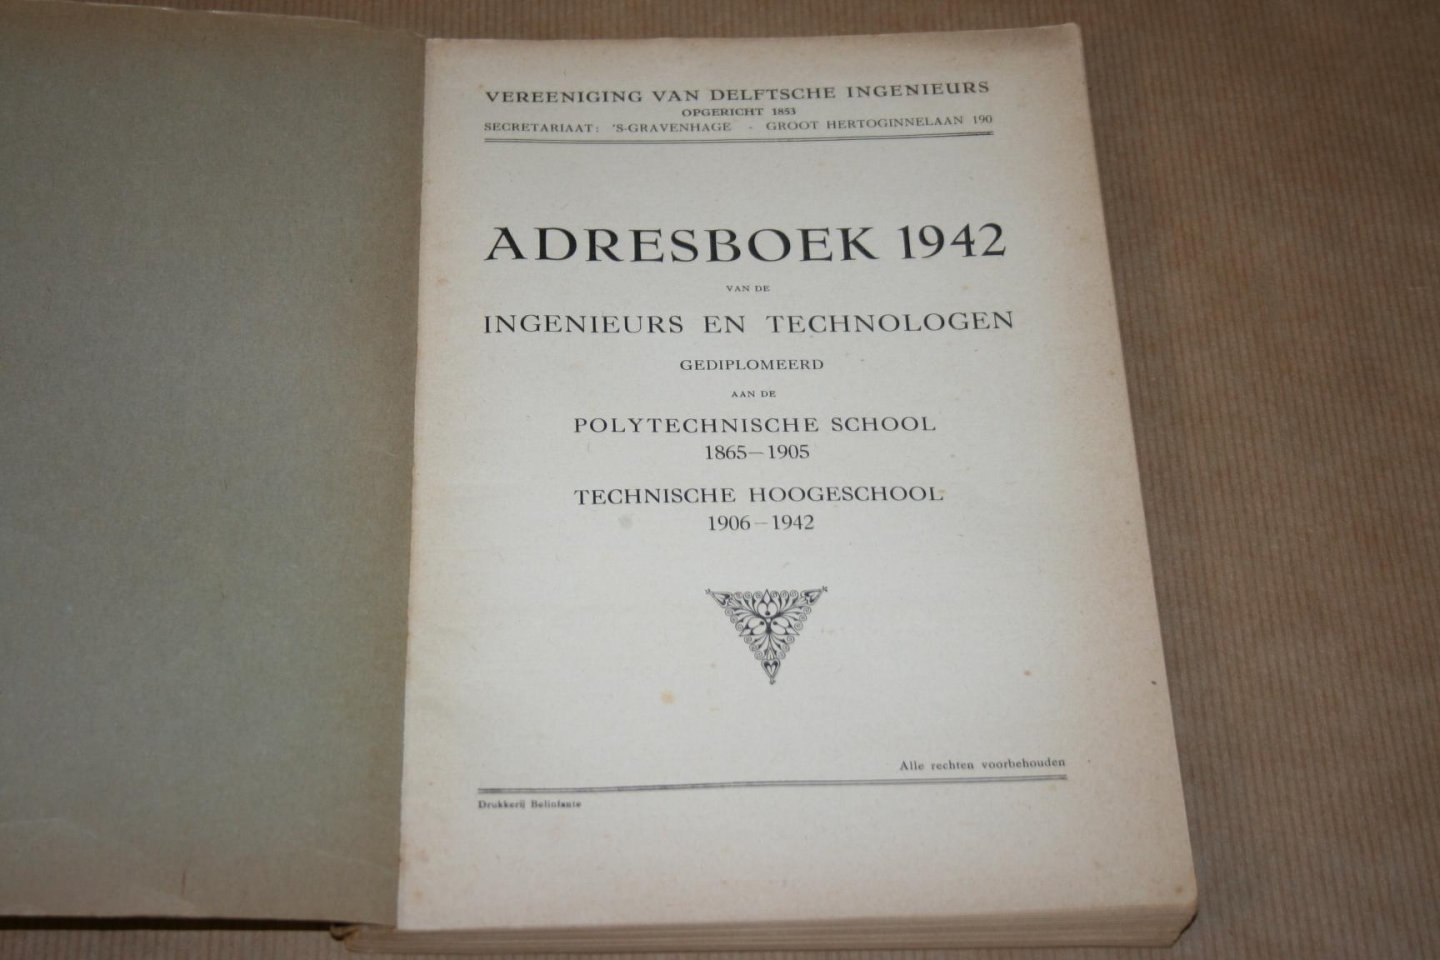  - Adresboek 1942 -  van de Ingenieurs en Technologen  gediplomeerd aan de Polytechnische School & de Technische Hoogeschool